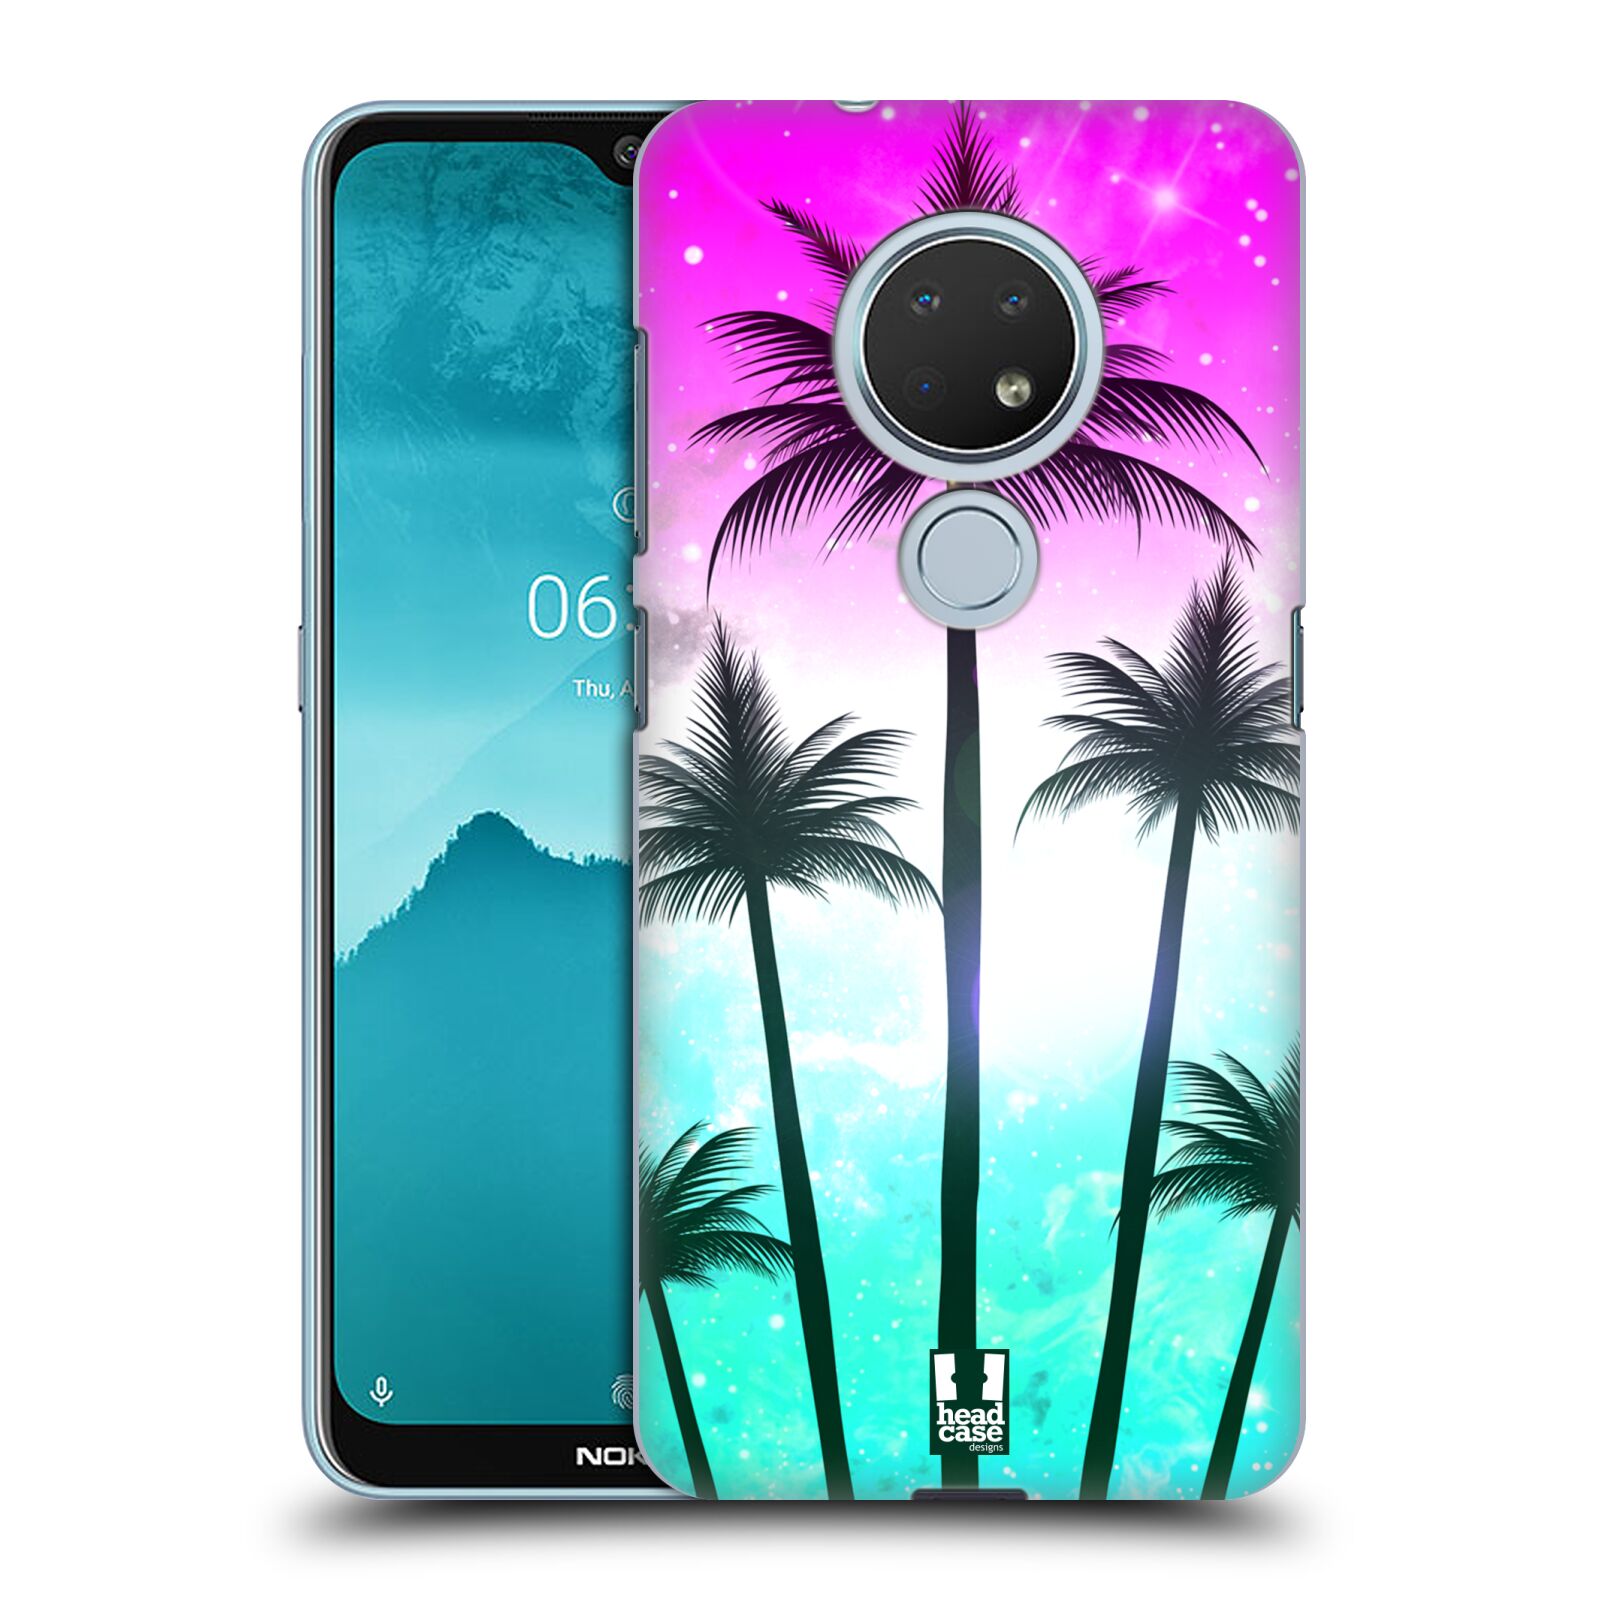 Pouzdro na mobil Nokia 6.2 - HEAD CASE - vzor Kreslený motiv silueta moře a palmy RŮŽOVÁ A TYRKYS